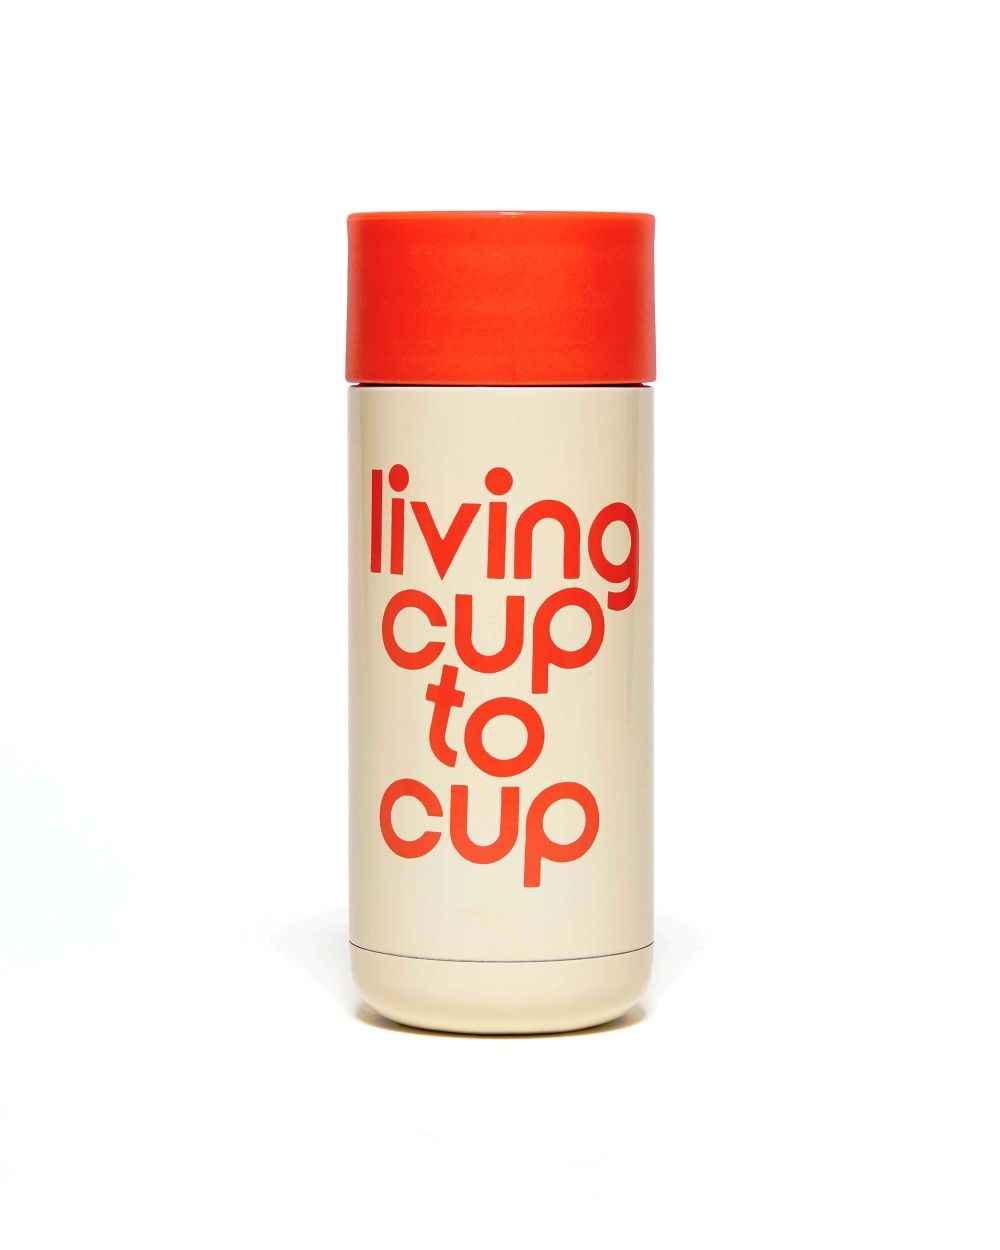 كوب حراري ستانلس ستيل بعبارة Living Cup To Cup من Ban.do